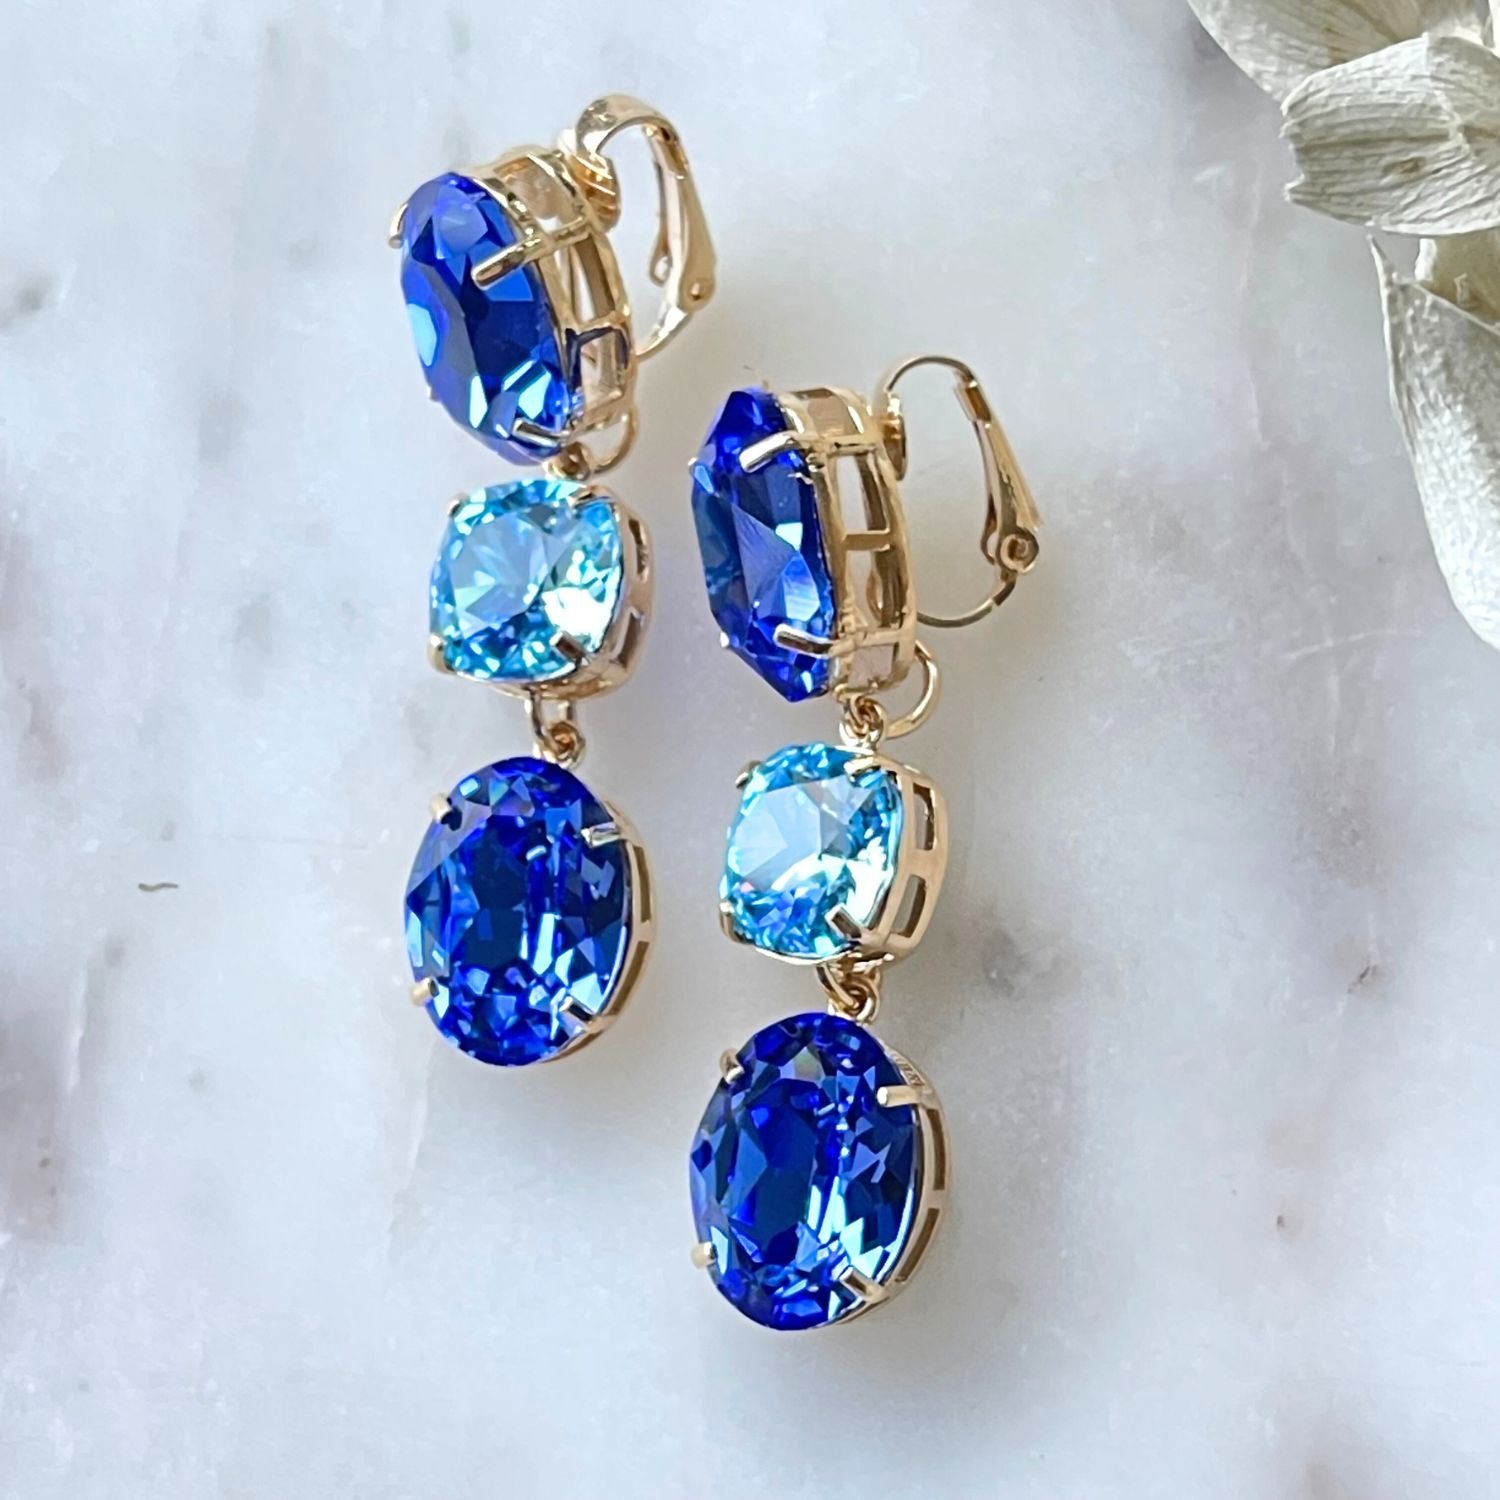 Entdecken Sie die elegante Schönheit der "GLOW" Ohrringe mit schimmernden blauen Kristallen. Die Basis können separat getragen werden, für einen dezenten Look. Diese exquisiten Ohrringe verleihen jedem Outfit einen unvergleichlichen Glanz und zeitlose Eleganz – perfekt für jeden Anlass.